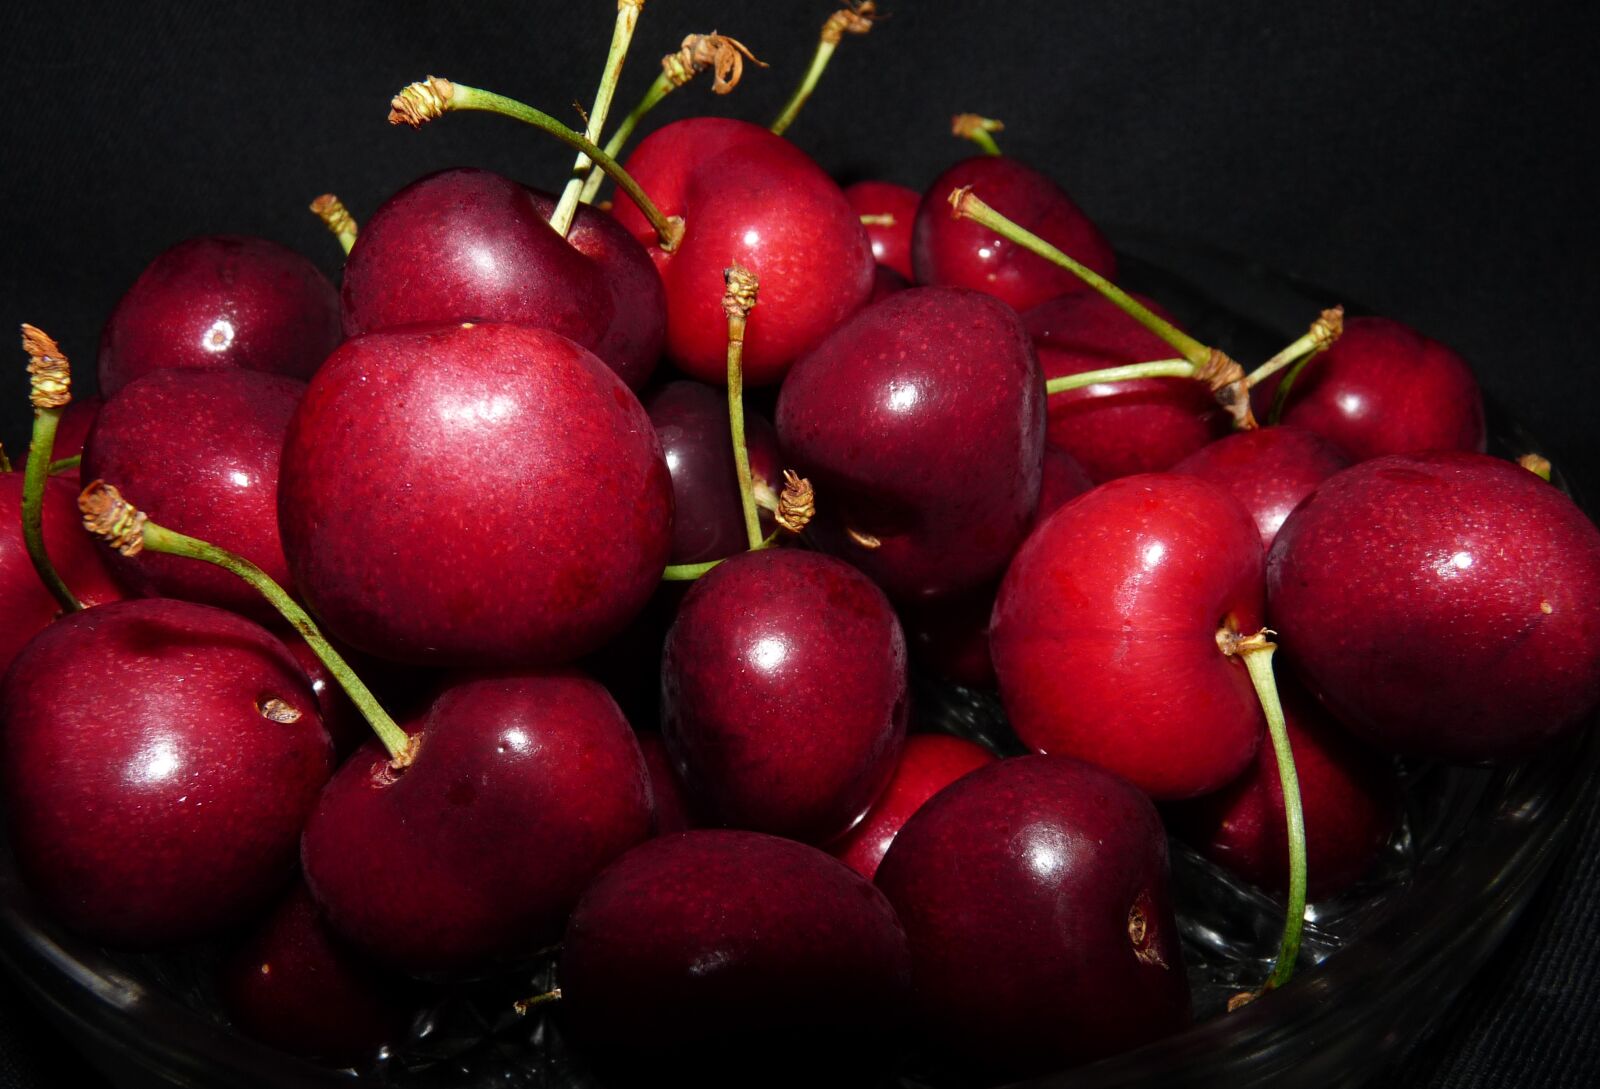 Panasonic Lumix DMC-FZ28 sample photo. Fruit, cherries, ripe photography